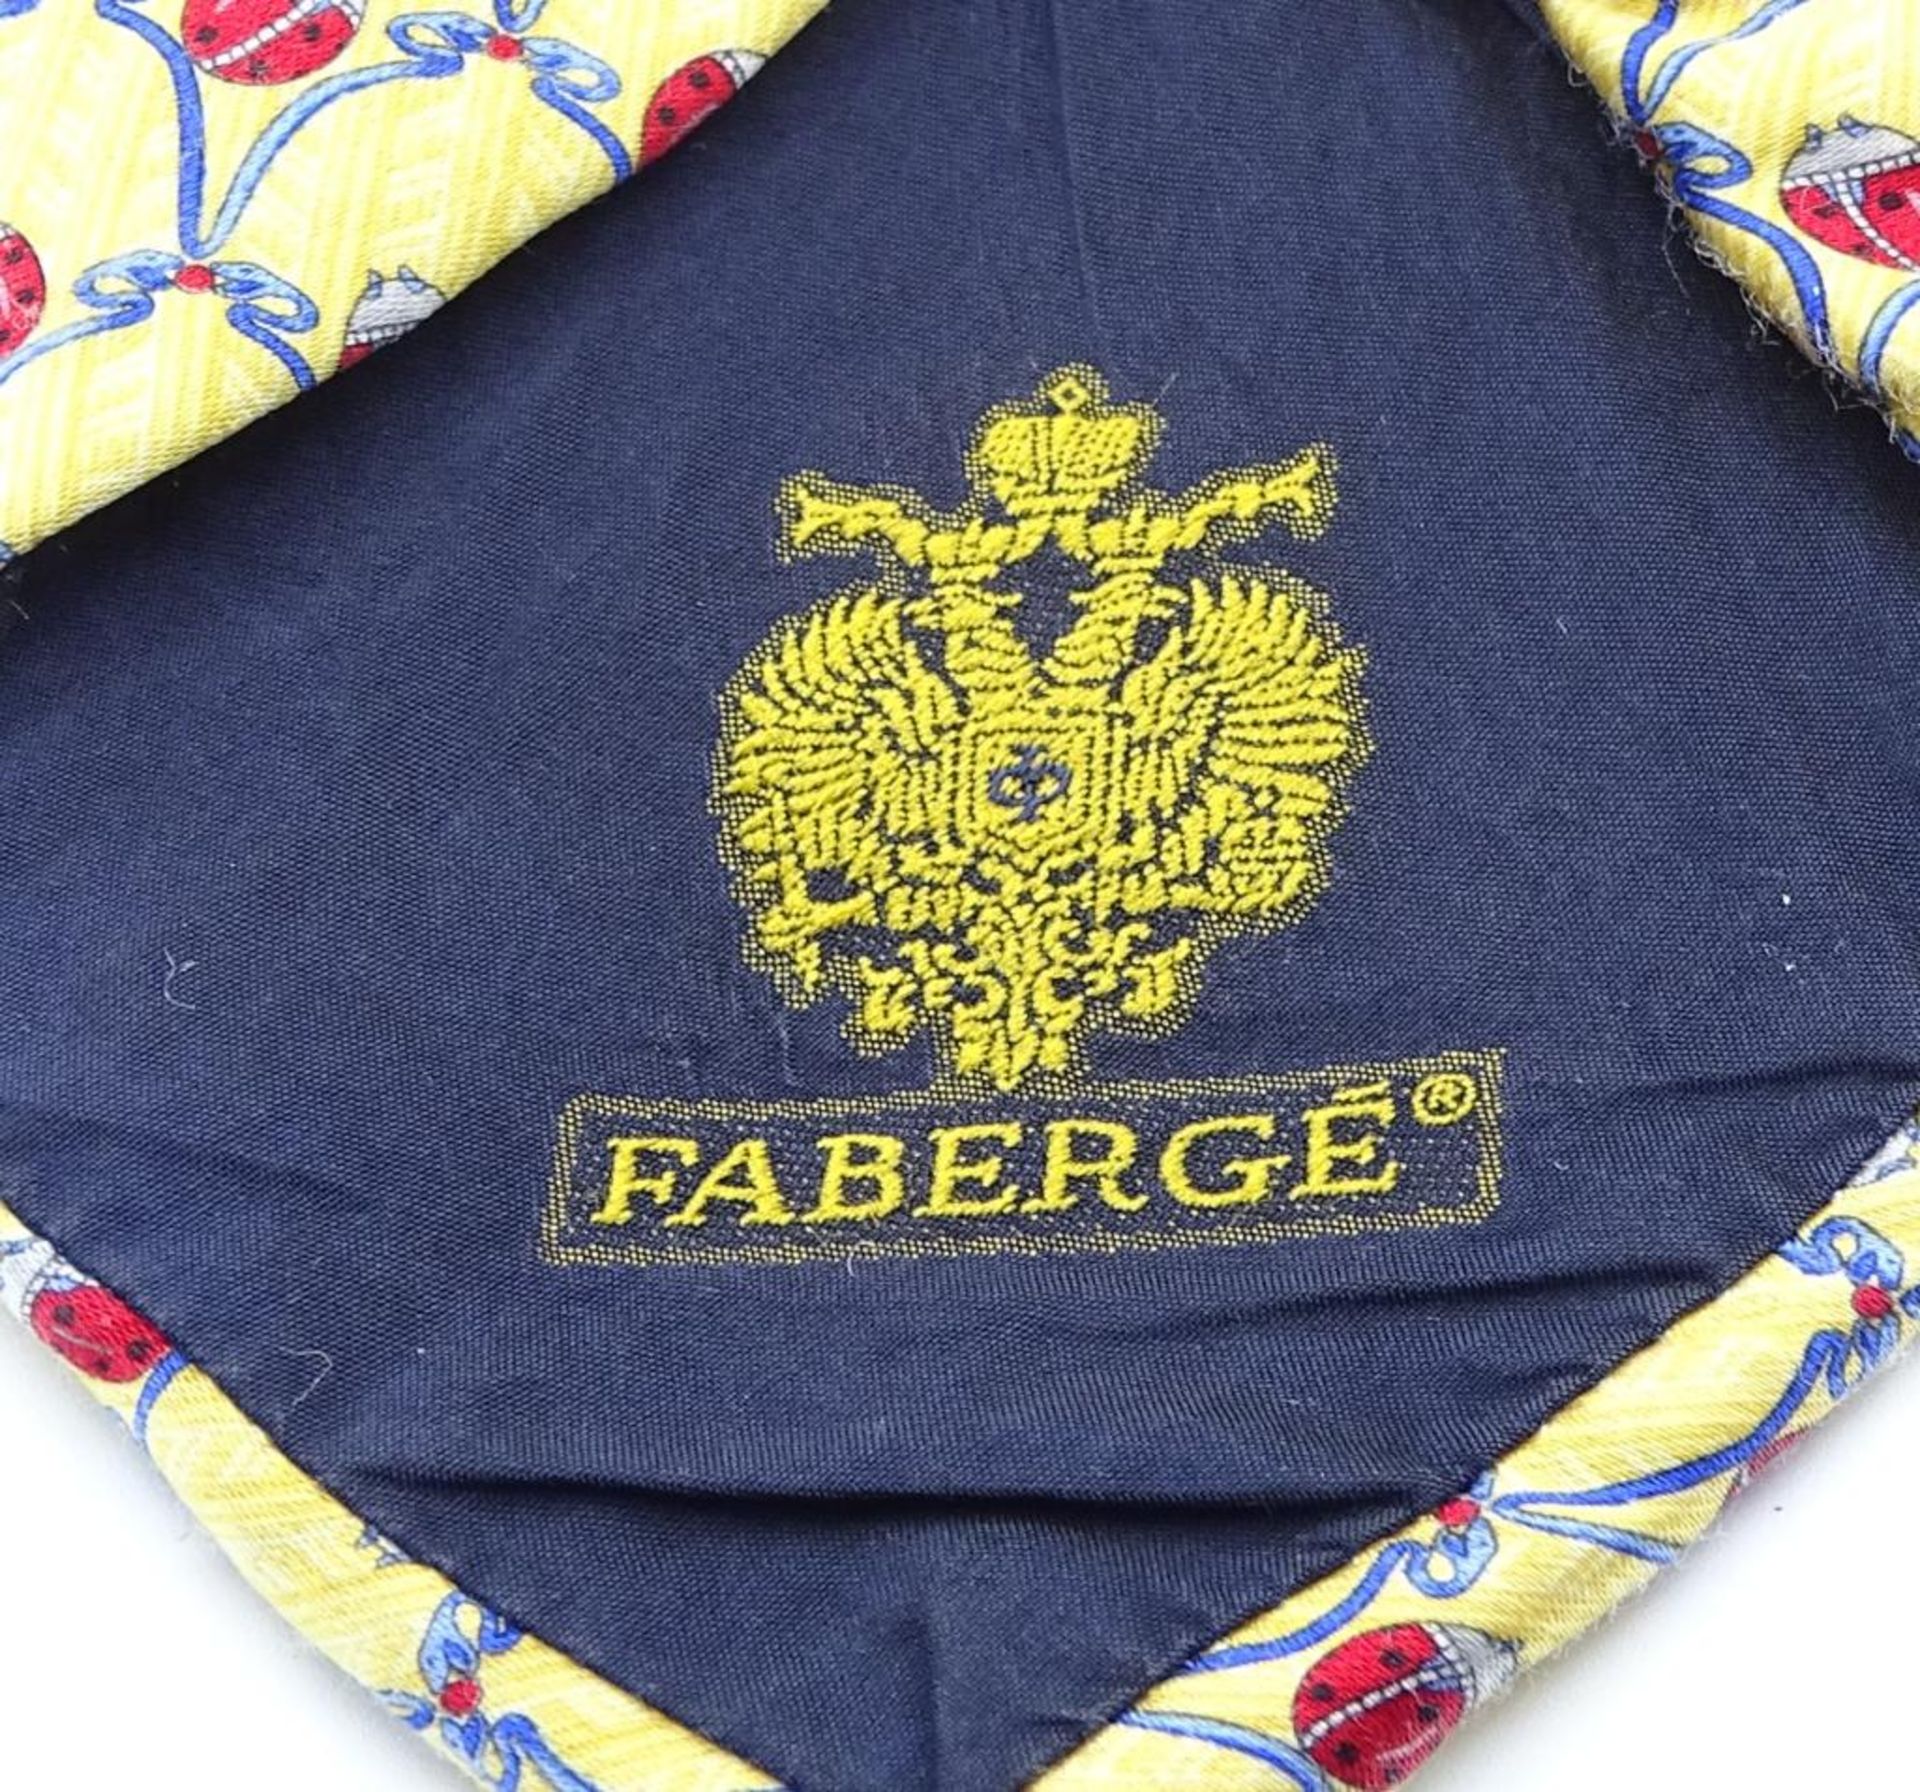 Krawatte "Faberge",Tragespuren,Maikäfer Muster,gelbfarbig,L- 144c - Bild 5 aus 5